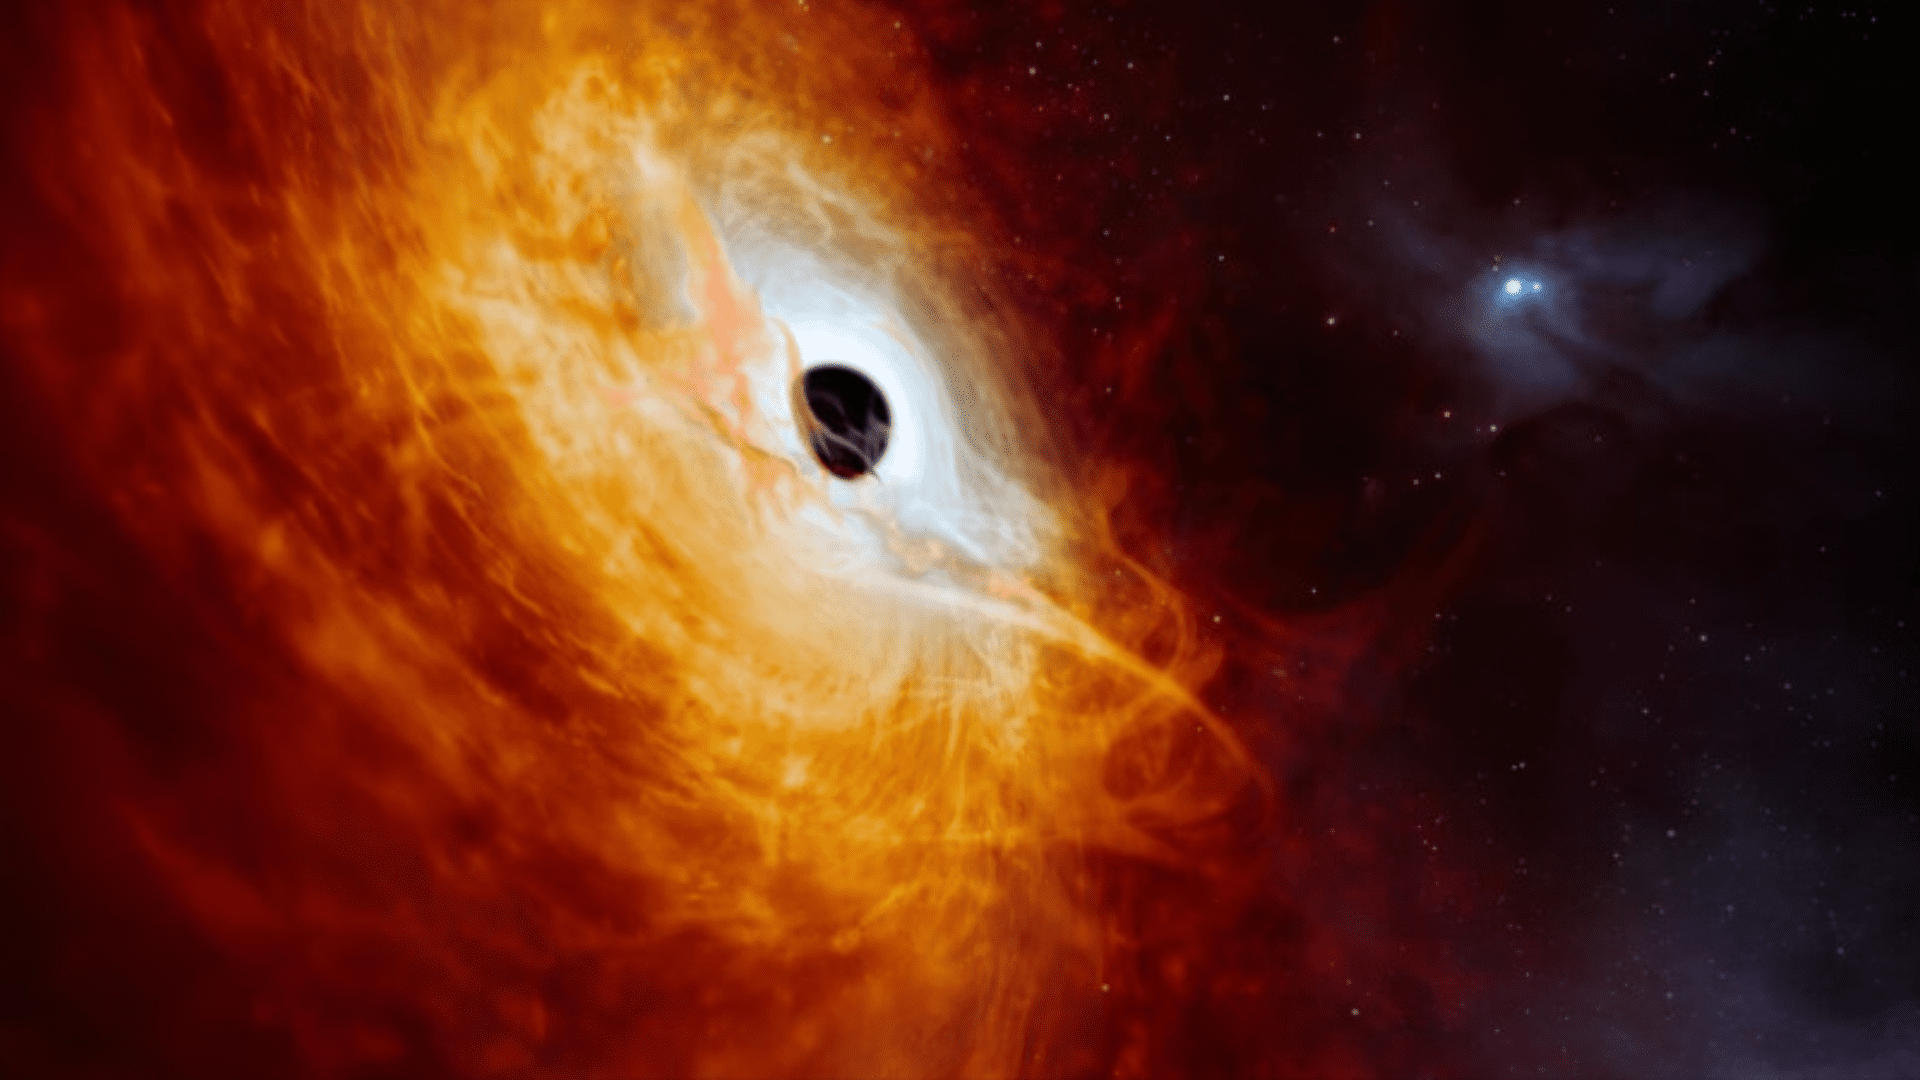 Supermassive black hole 